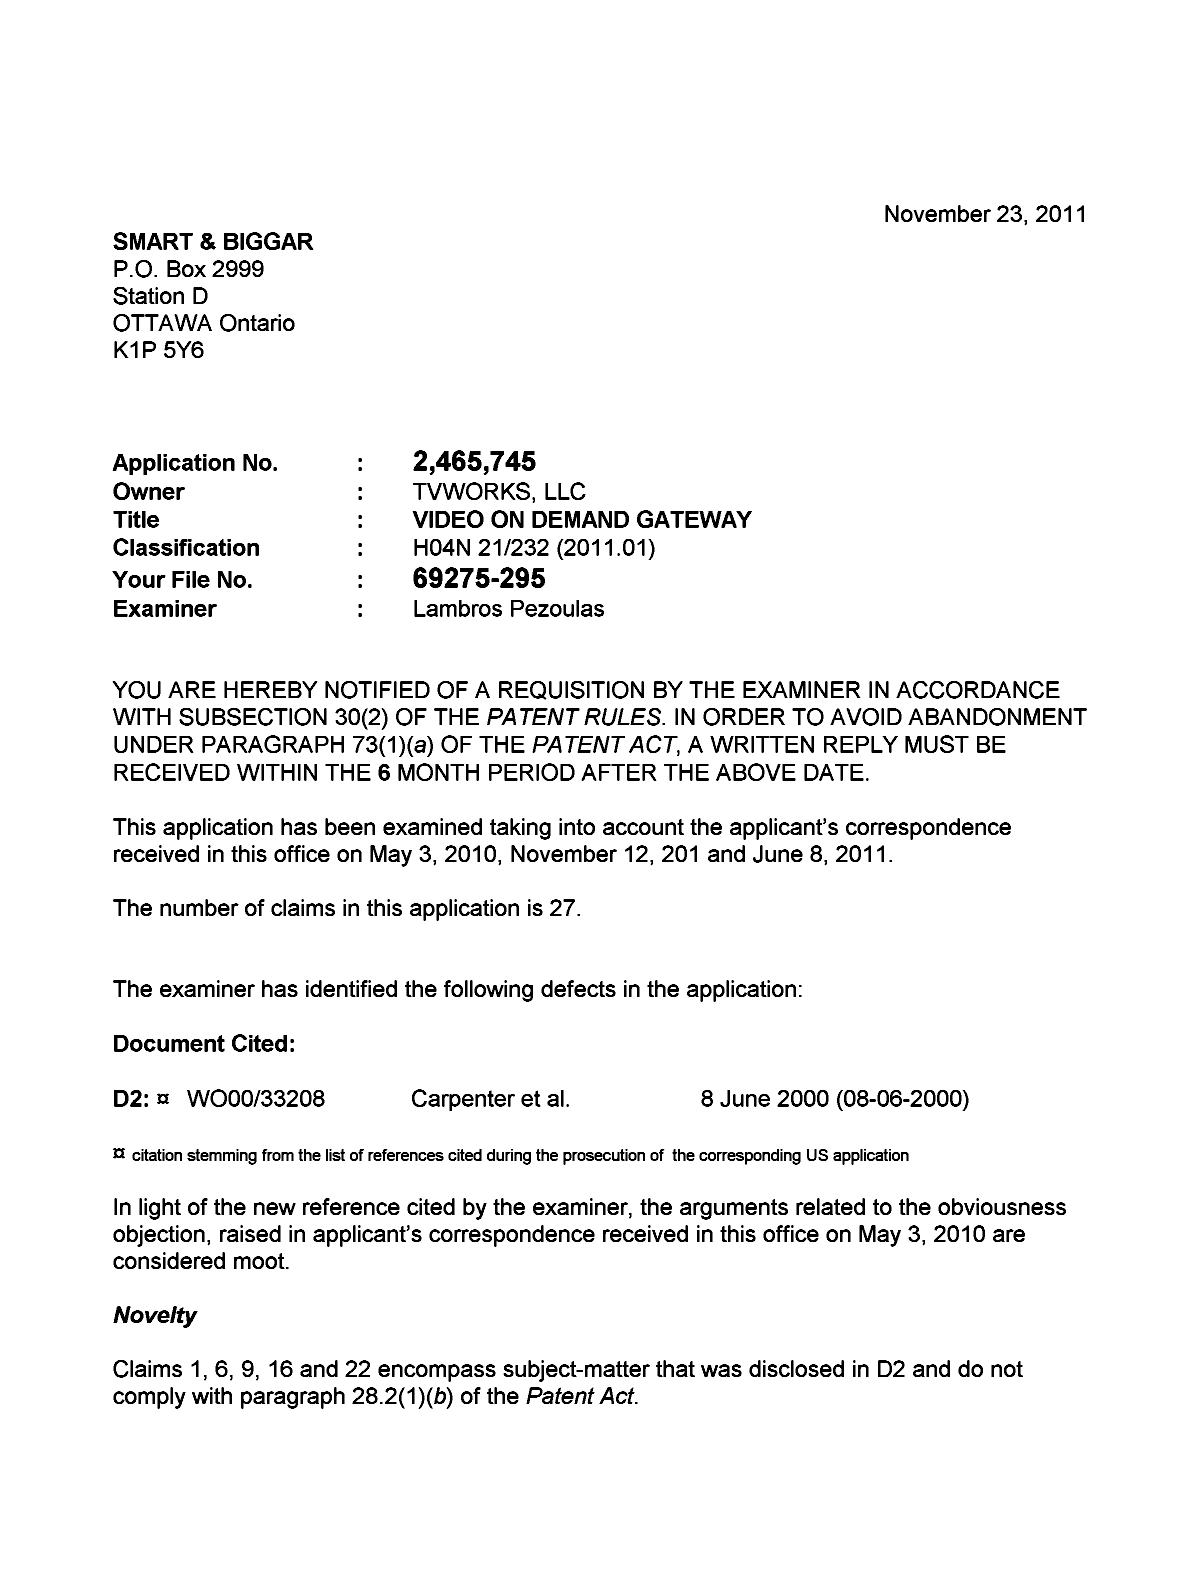 Document de brevet canadien 2465745. Poursuite-Amendment 20111123. Image 1 de 2